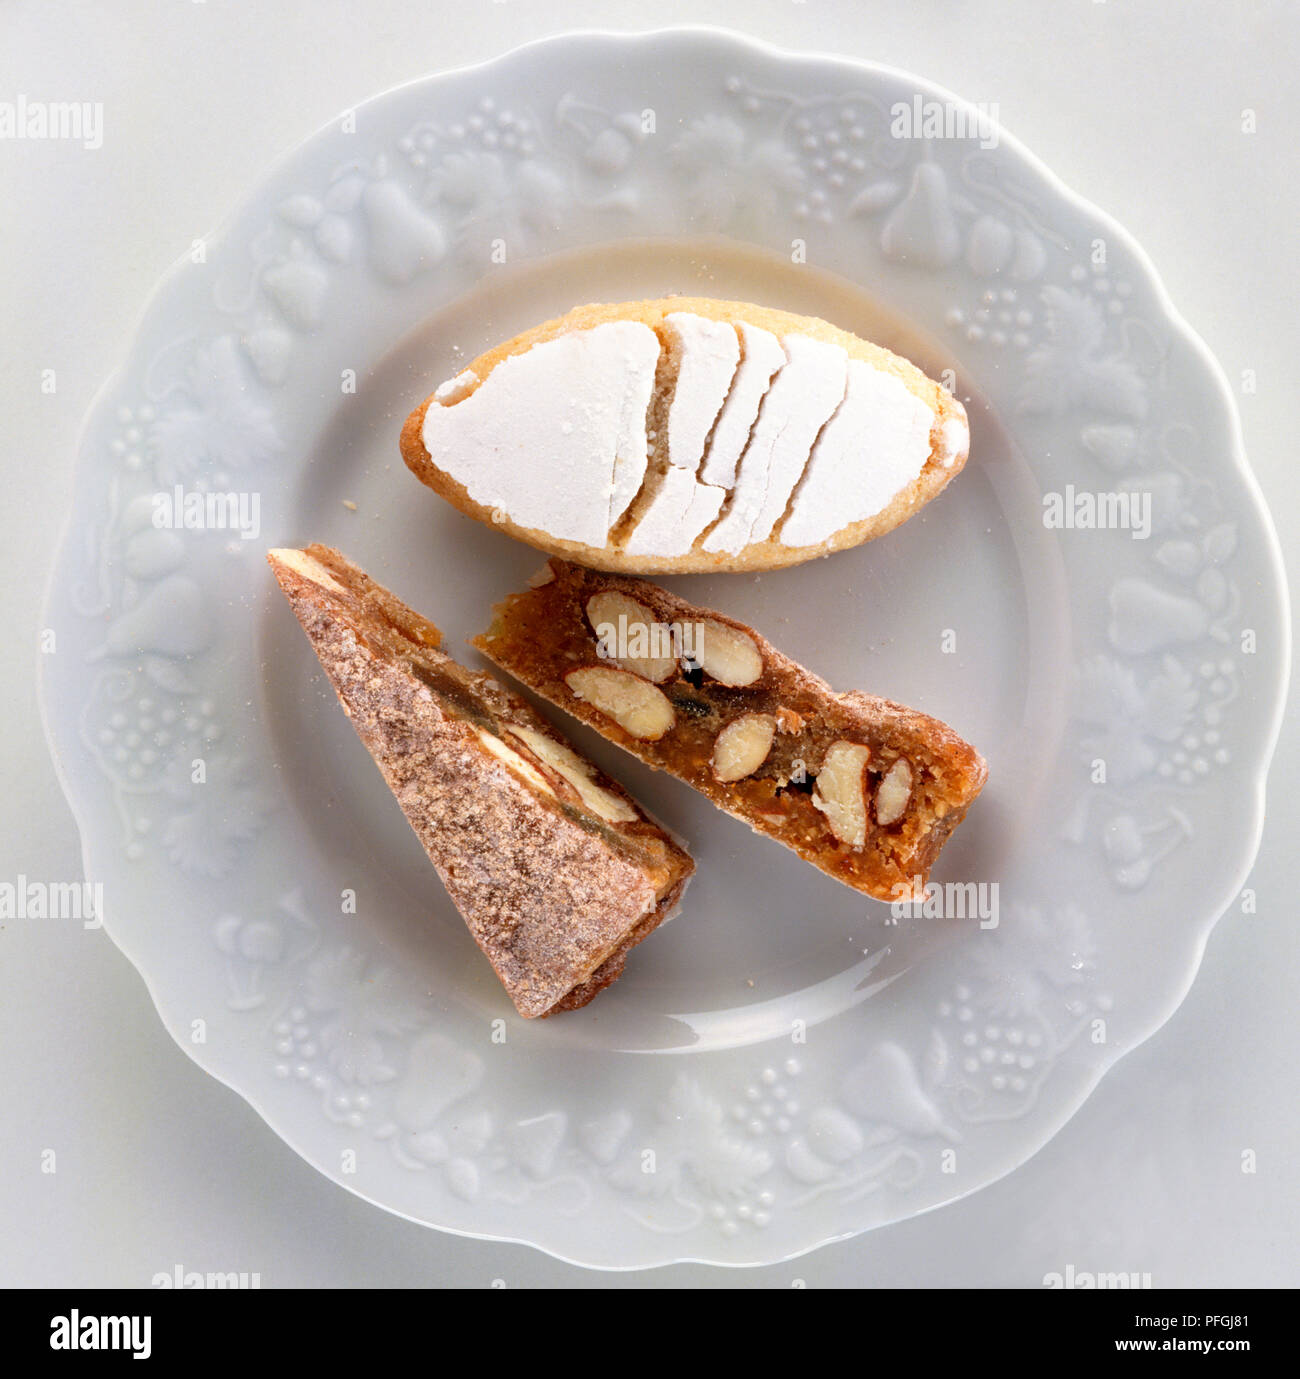 Scheiben Panforte, dichten dunklen Kuchen gewürzt mit Nelken und Zimt, und ovale Ricciarelli aus Mandeln, orange und Honig. Stockfoto